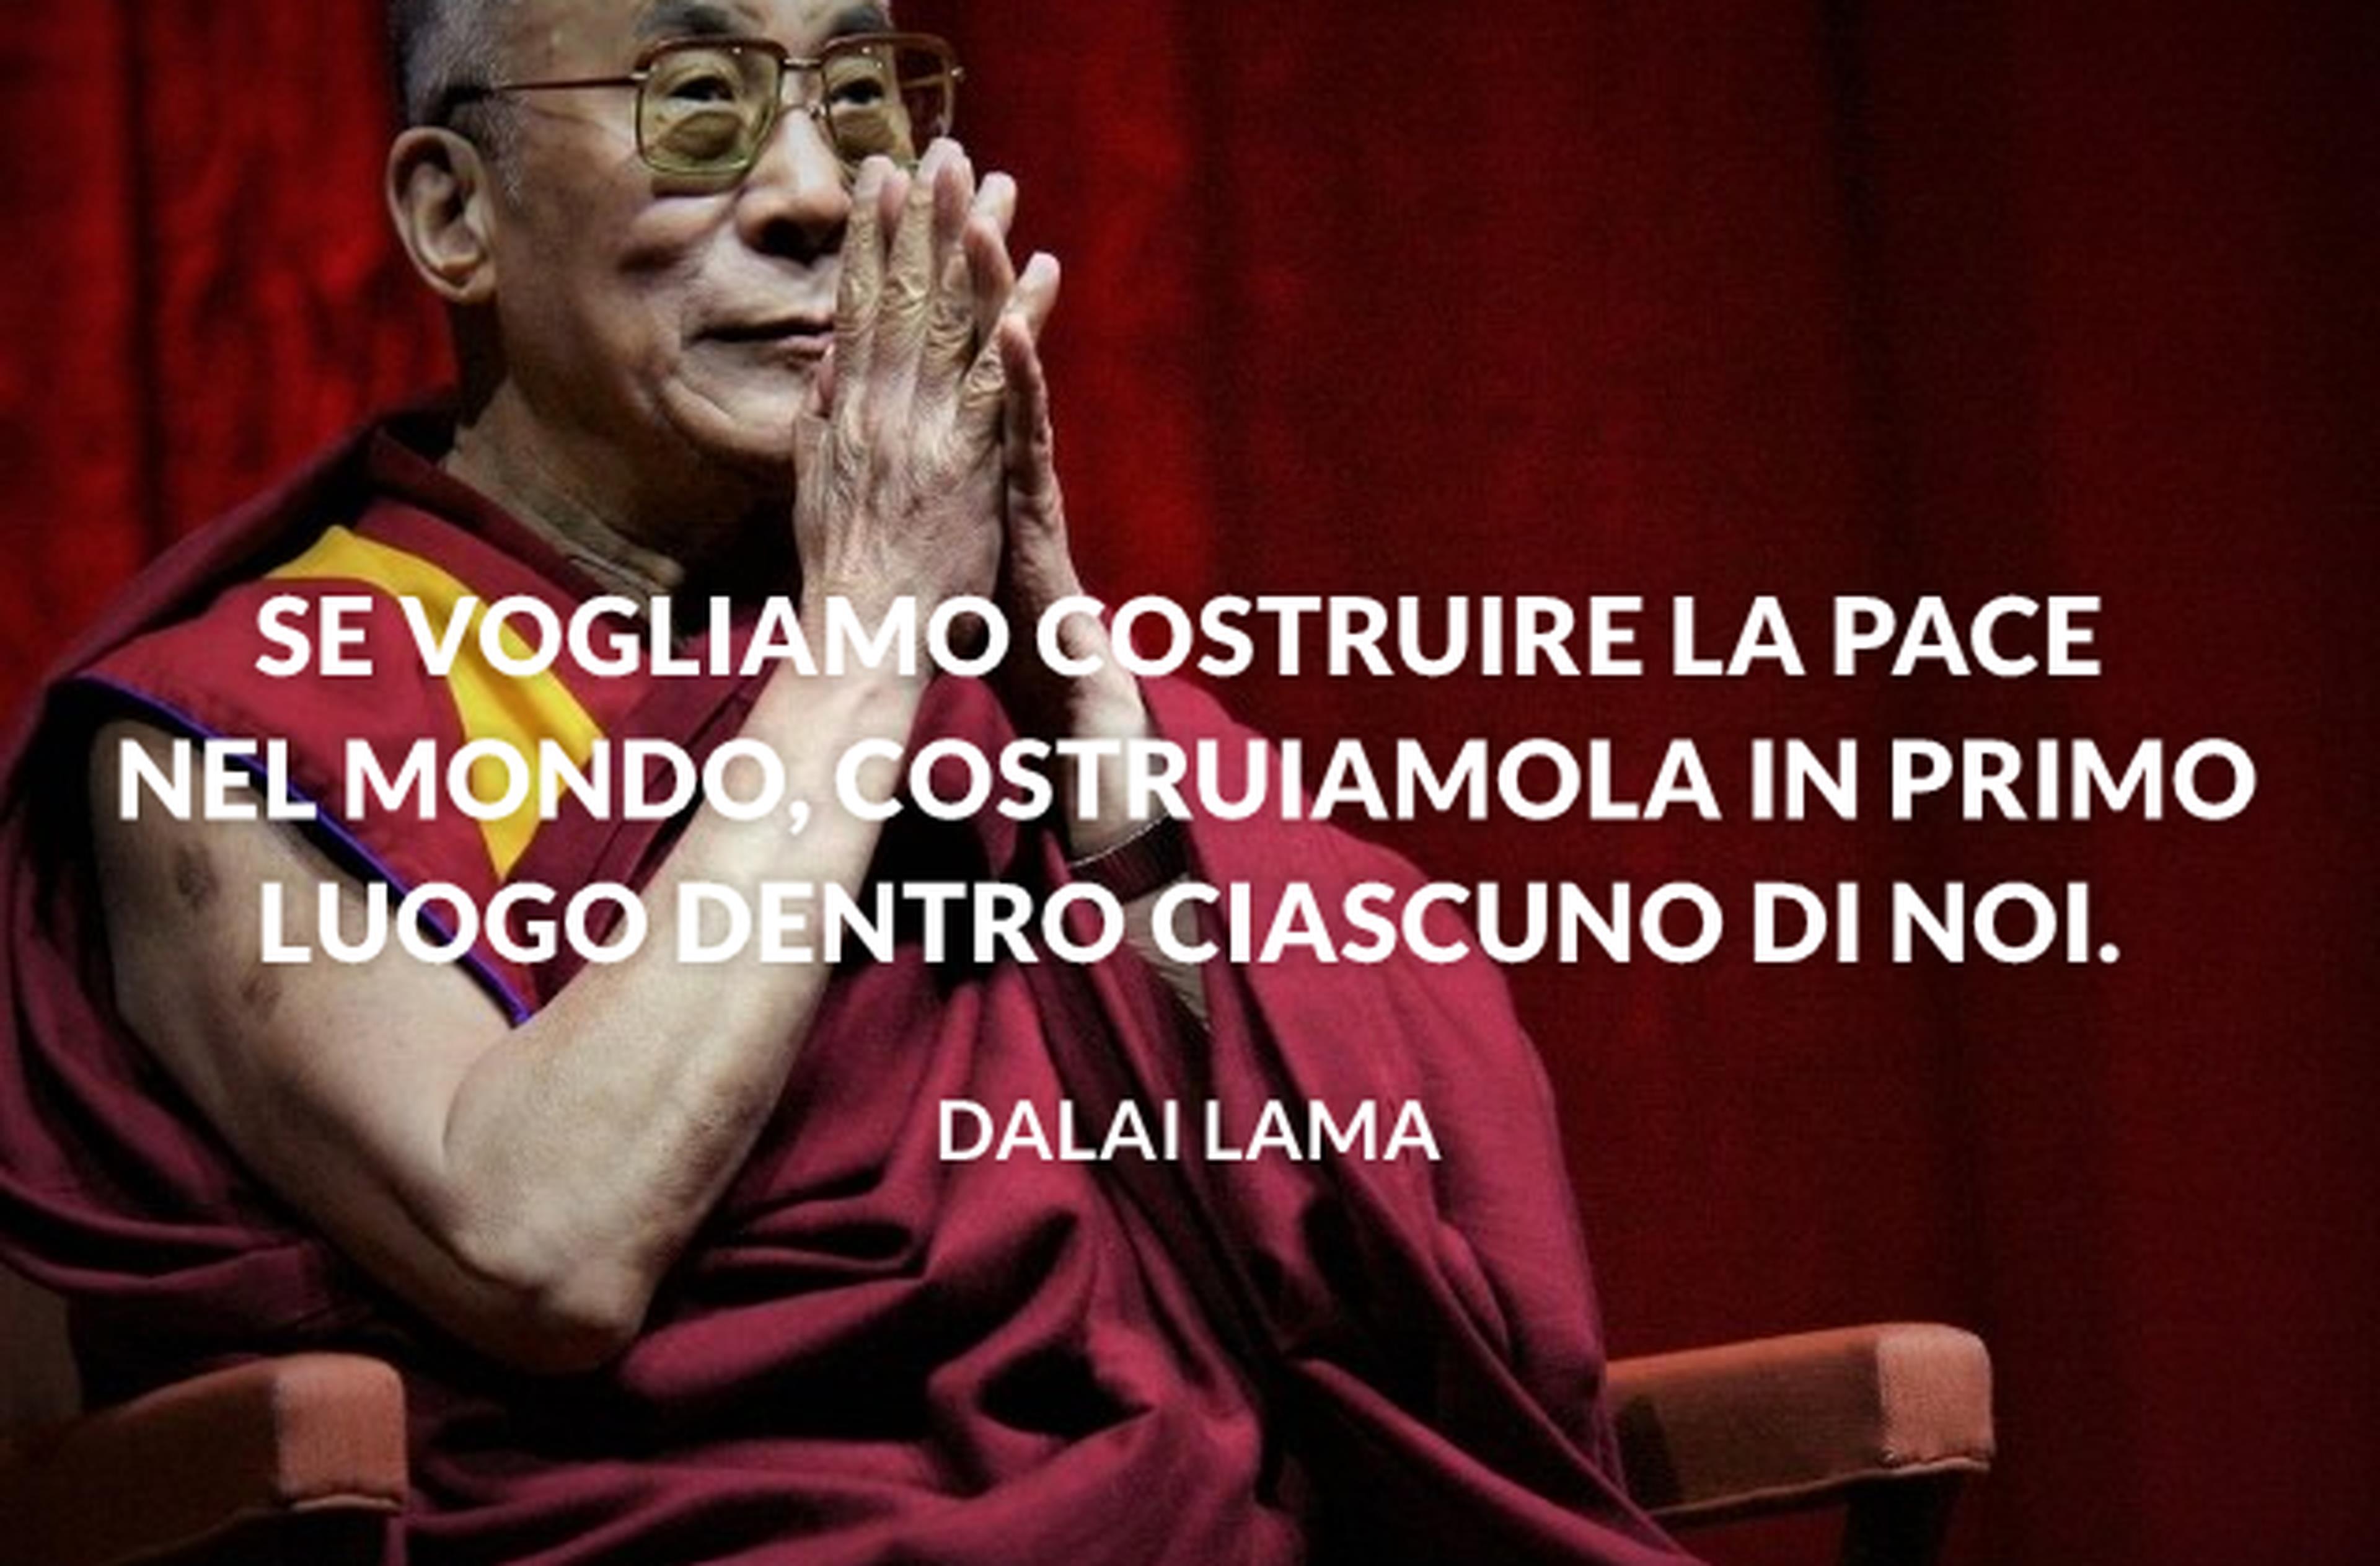 Una selezione di frasi sagge e toccanti del Dalai Lama